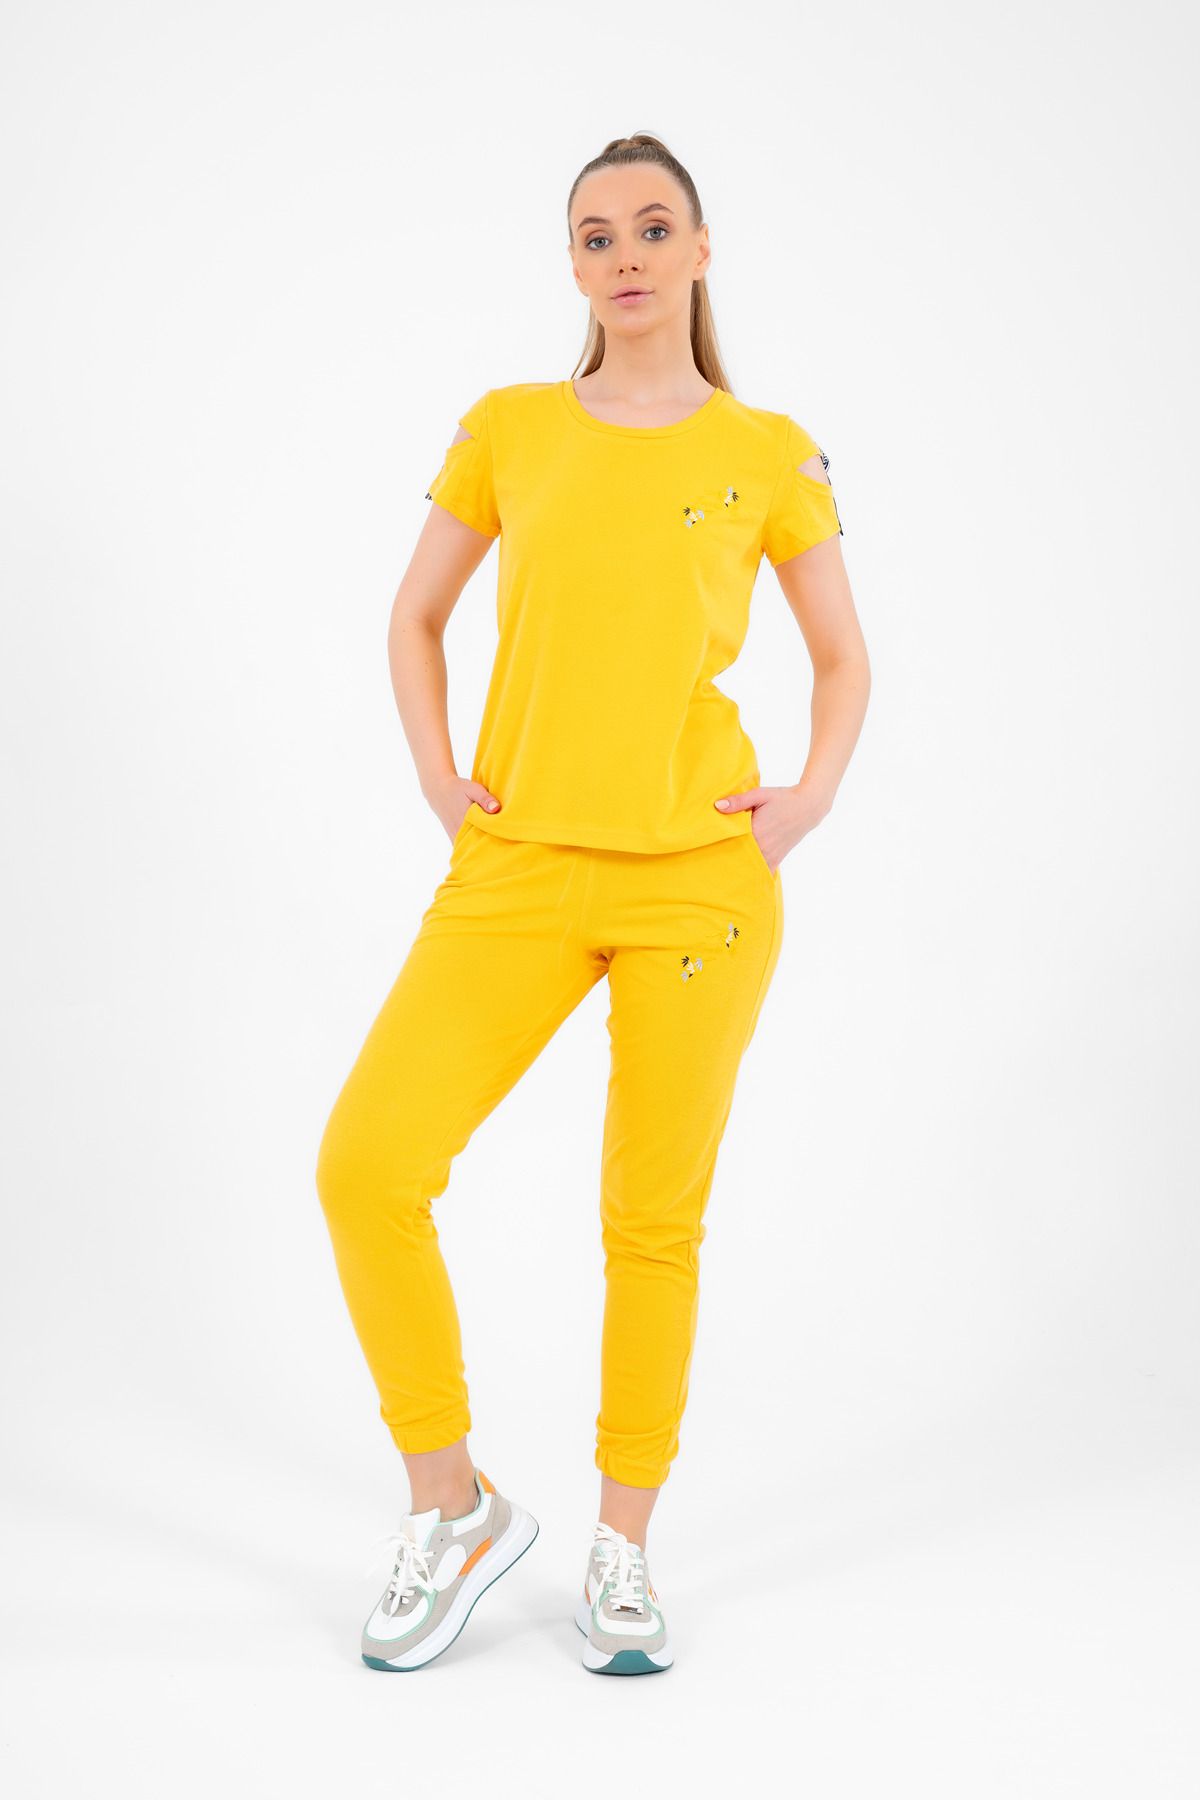 Escetic Sarı Kadın Nakış Detaylı Abd Pike Nefes Alan T-shirt Takım A3068